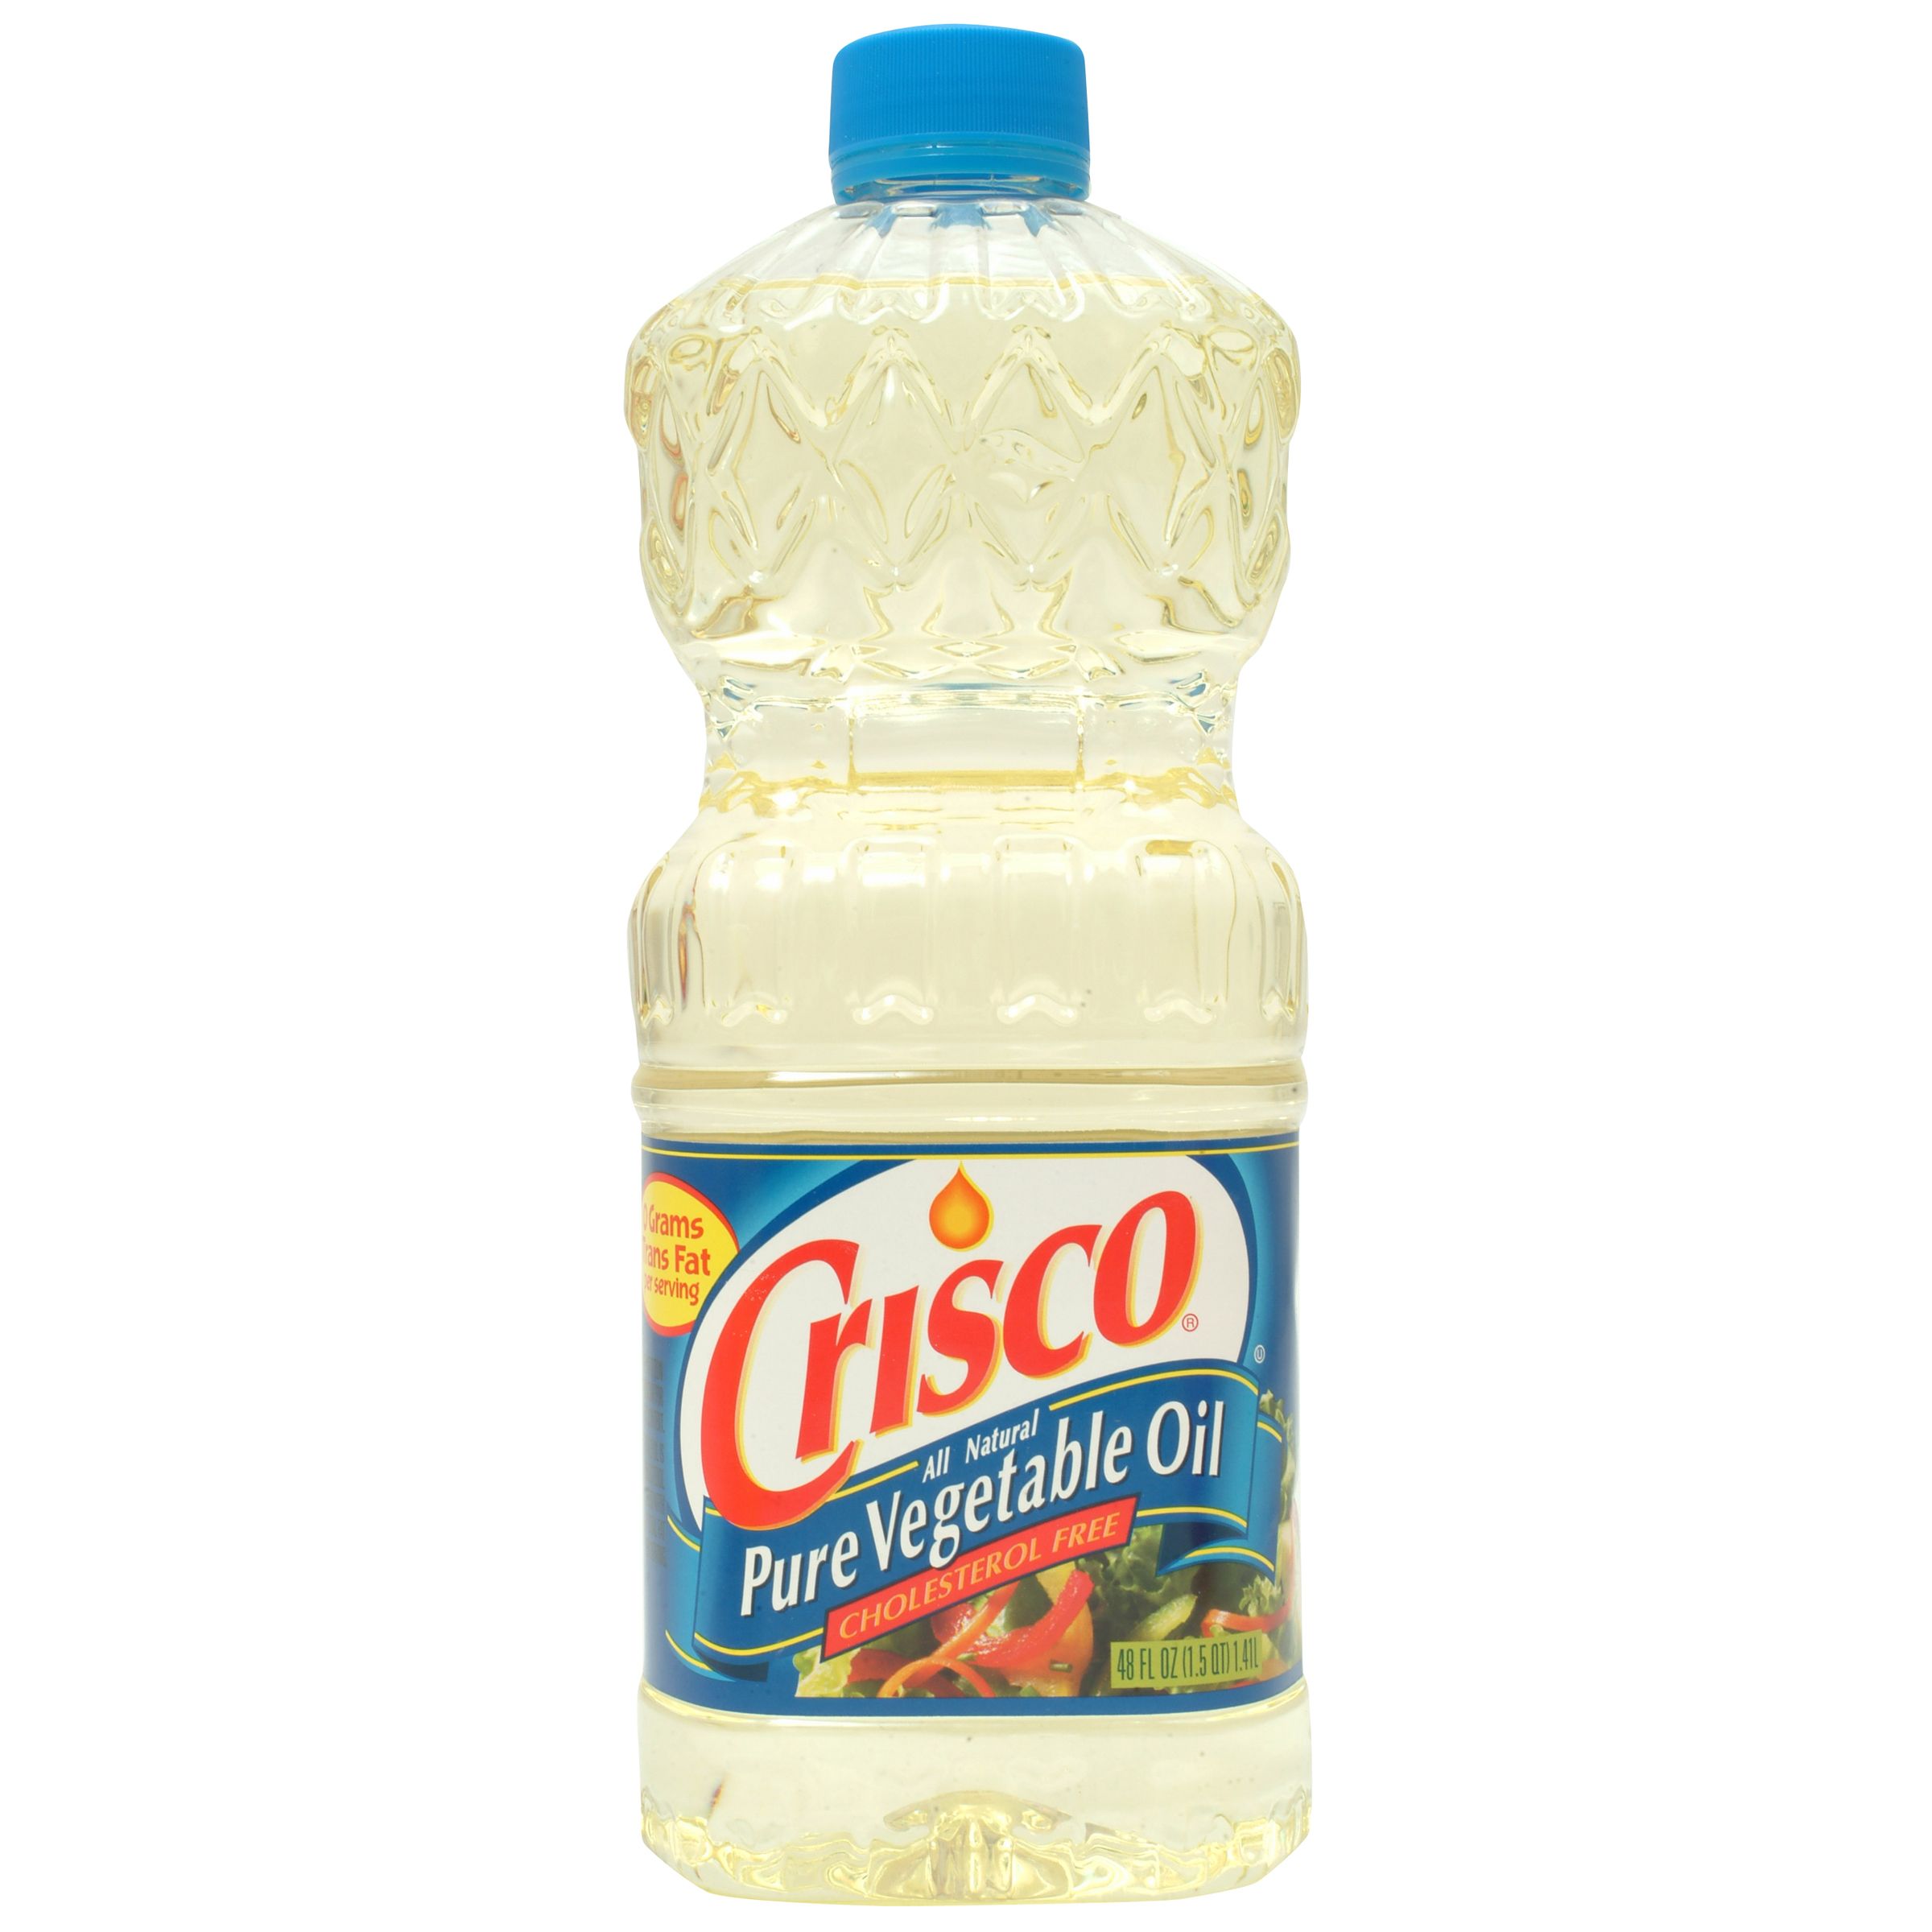 Crisco Pure Vegetable Oil 48 fluid ounce
